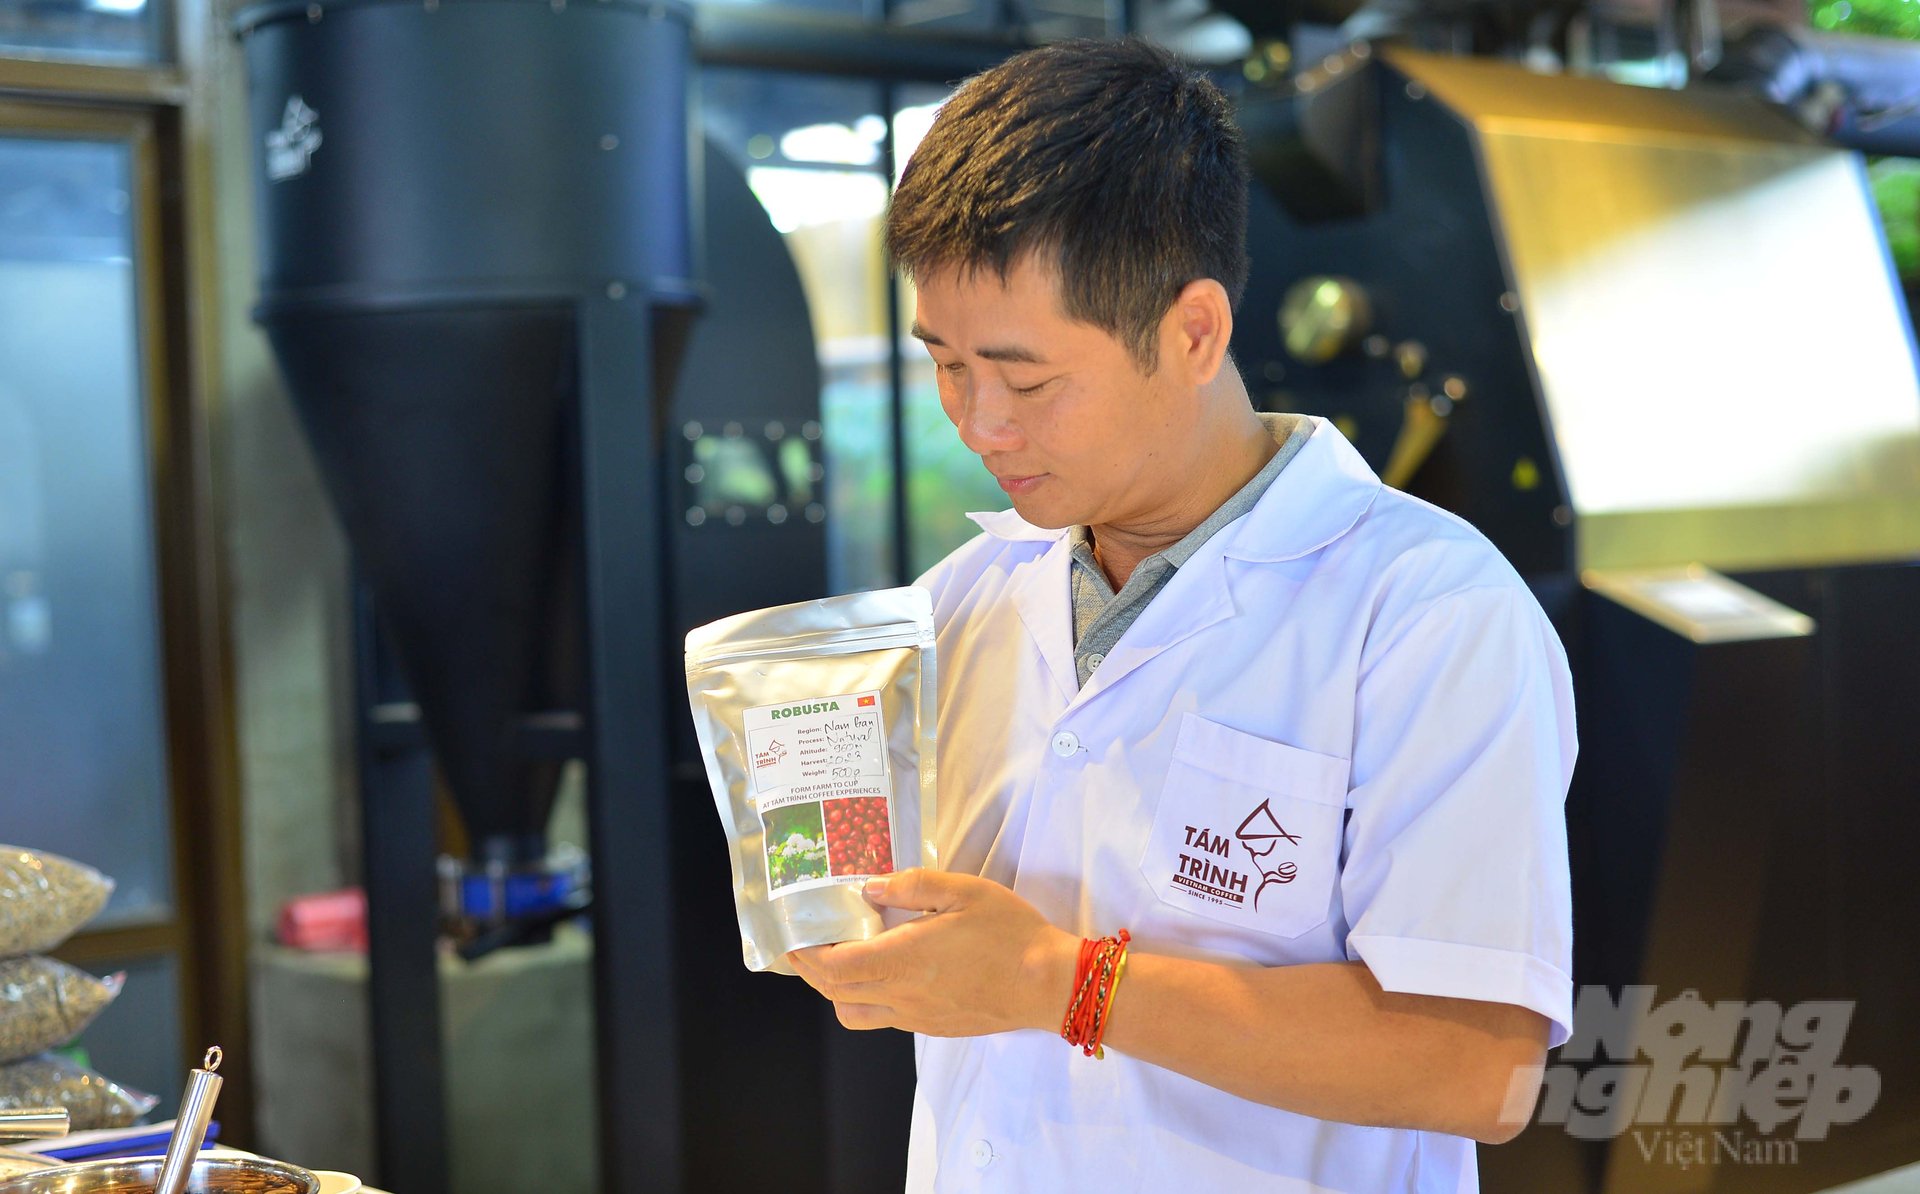 Sản phẩm cà phê robusta của tỉnh Lâm Đồng chủ yếu xuất khẩu qua các thị trường châu Âu như Đức, Tây Ban Nha, Bỉ, Italia…, châu Á như Đài Loan, Hàn Quốc, Nhật Bản, Indonesia… Ảnh: Minh Hậu.